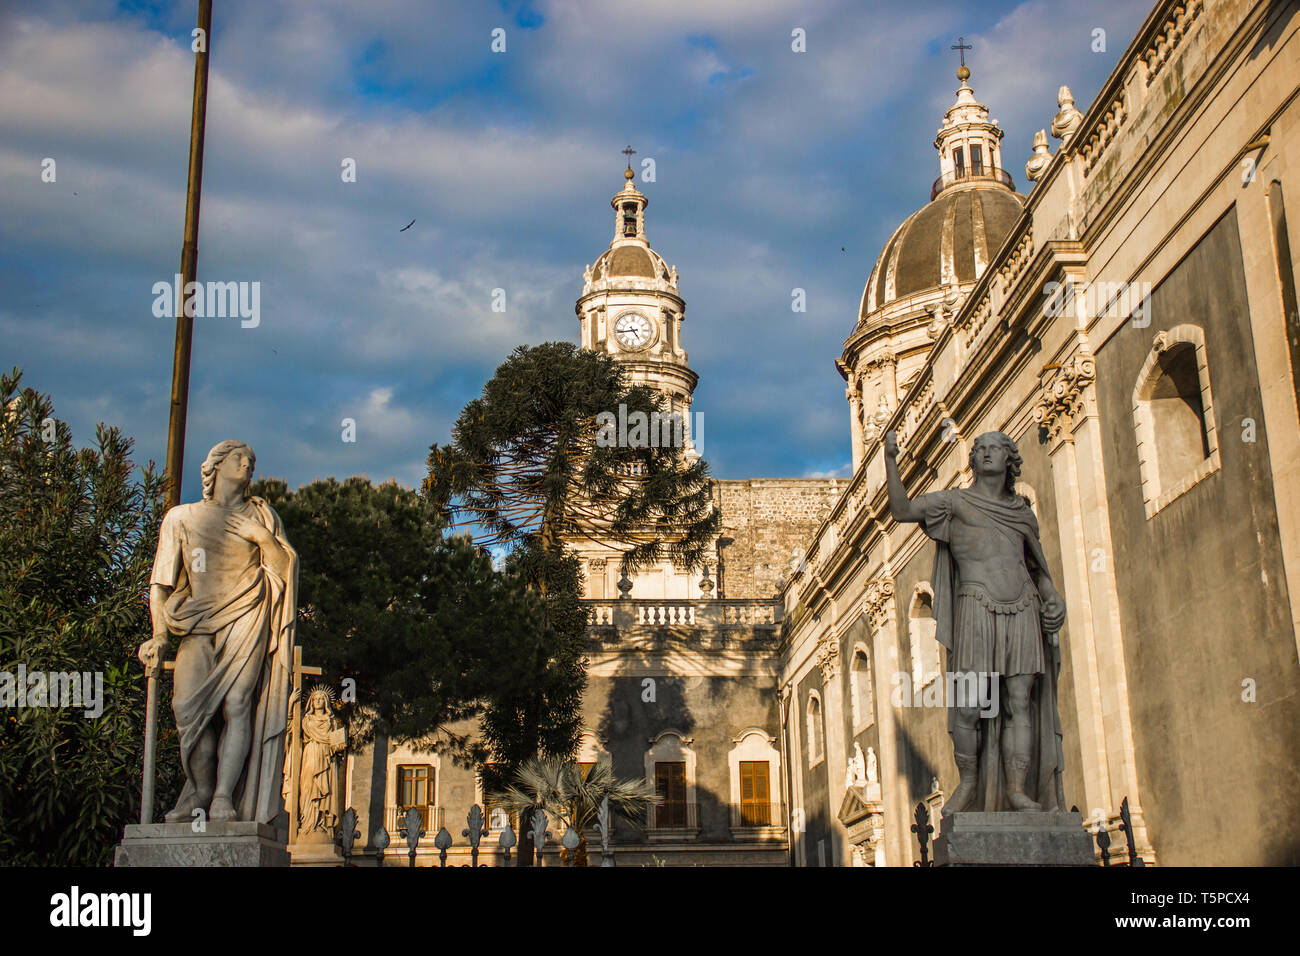 Die Kathedrale von Catania detail, barocken Architektur mit Statuen und Kuppel Stockfoto